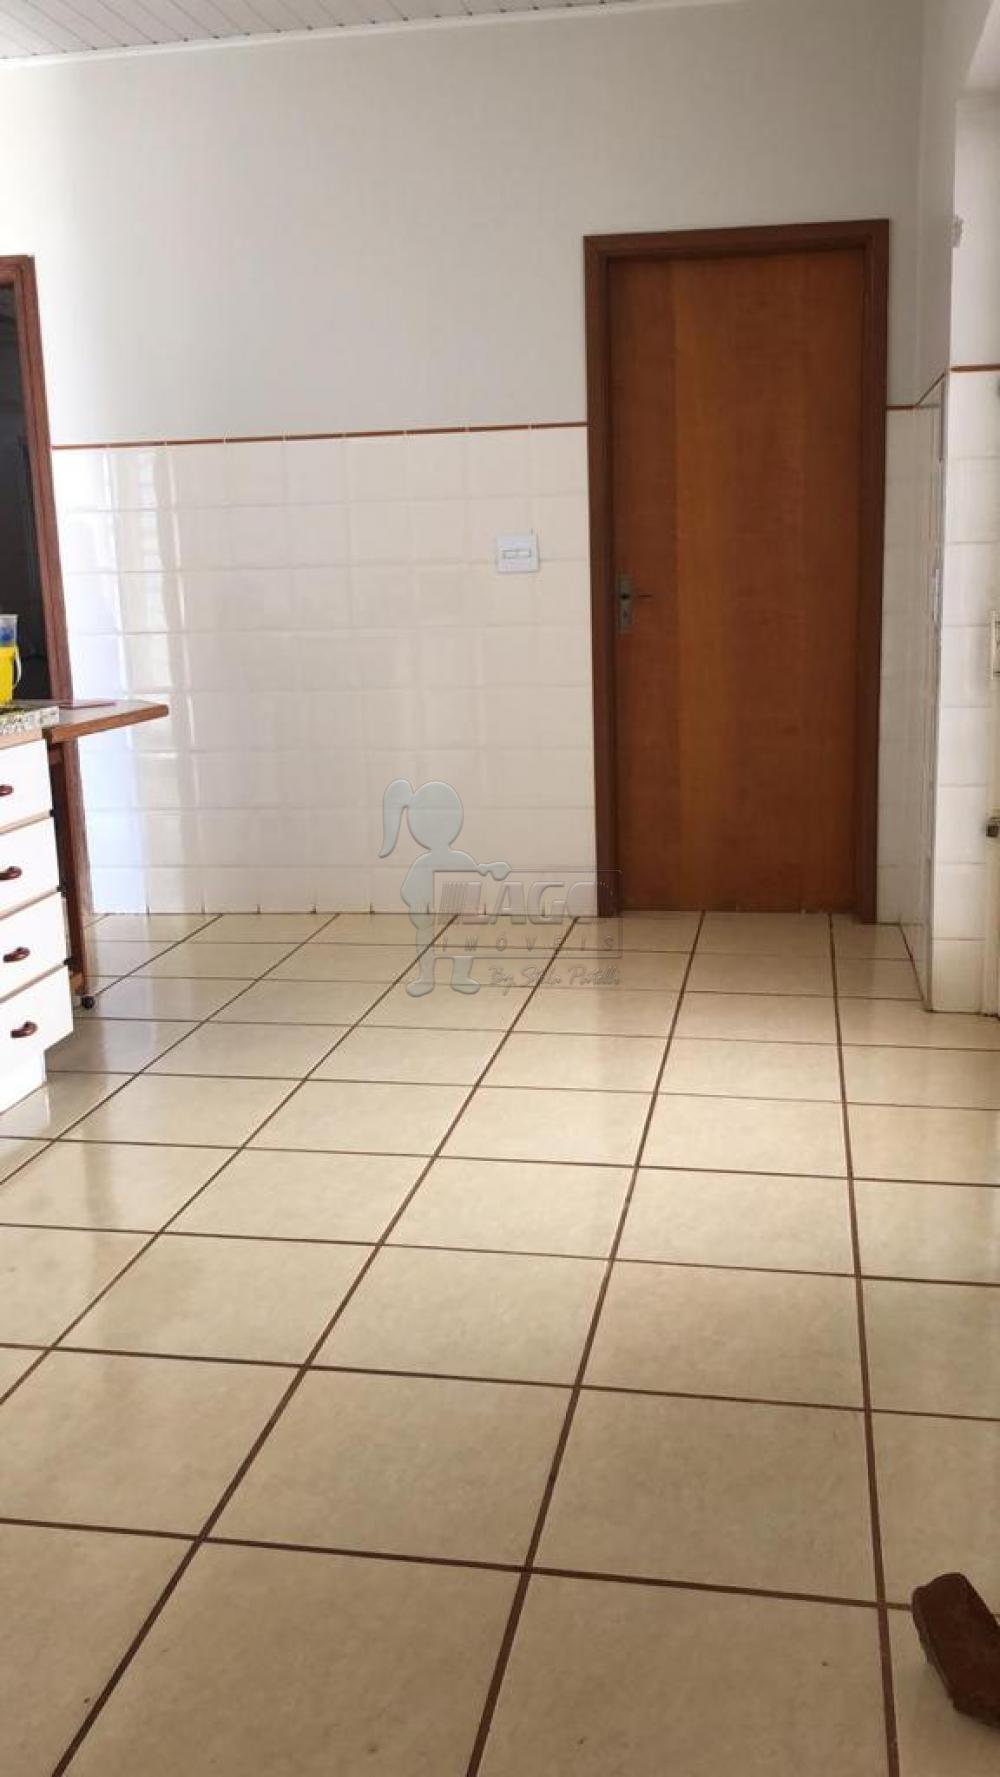 Comprar Casa / Padrão em Sertãozinho R$ 860.000,00 - Foto 17